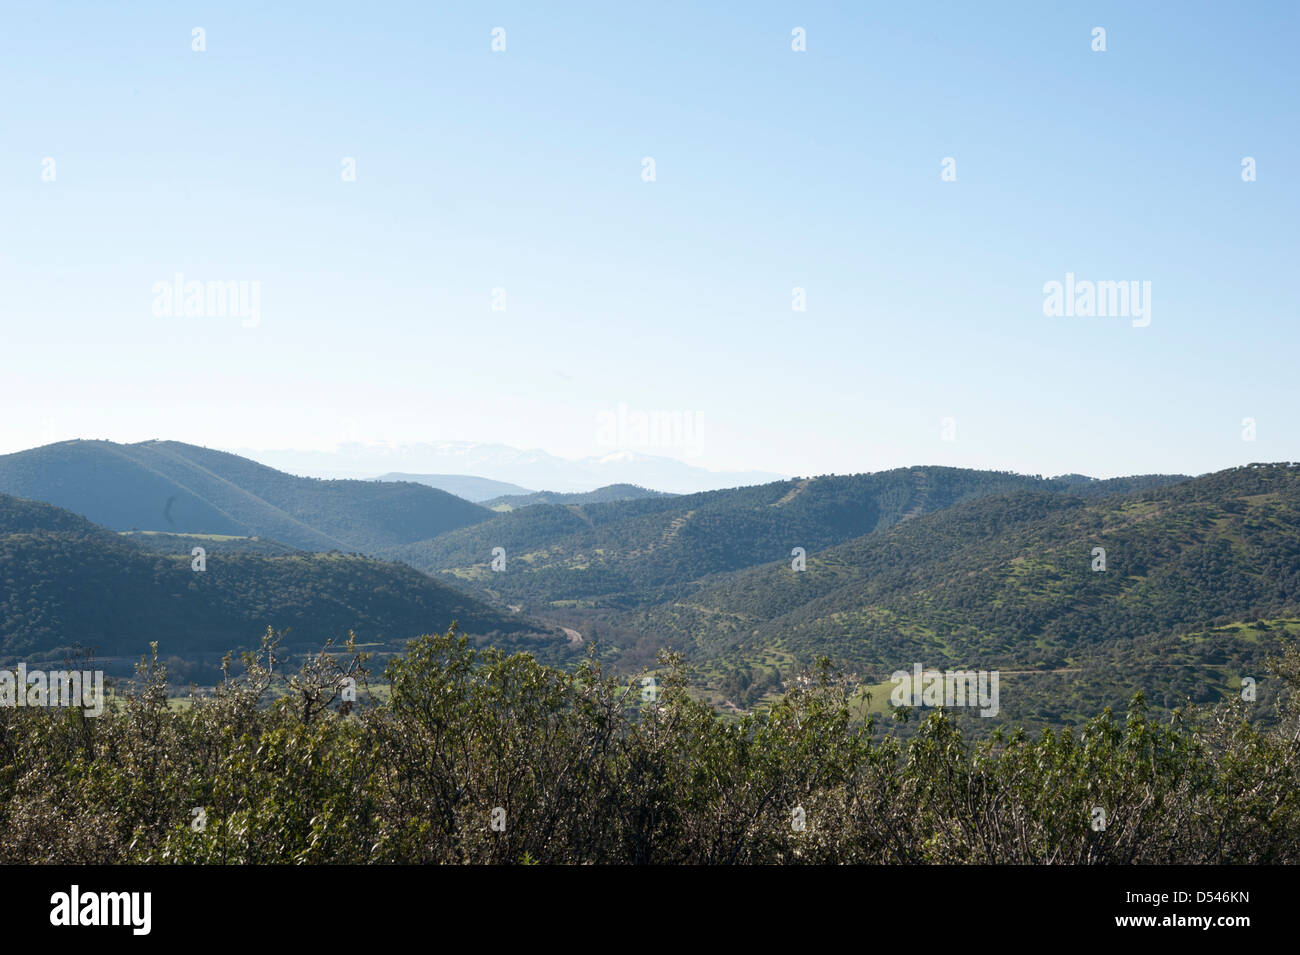 View of Parque Natural de los Despenaperros, province of Jaén, Spain Stock Photo